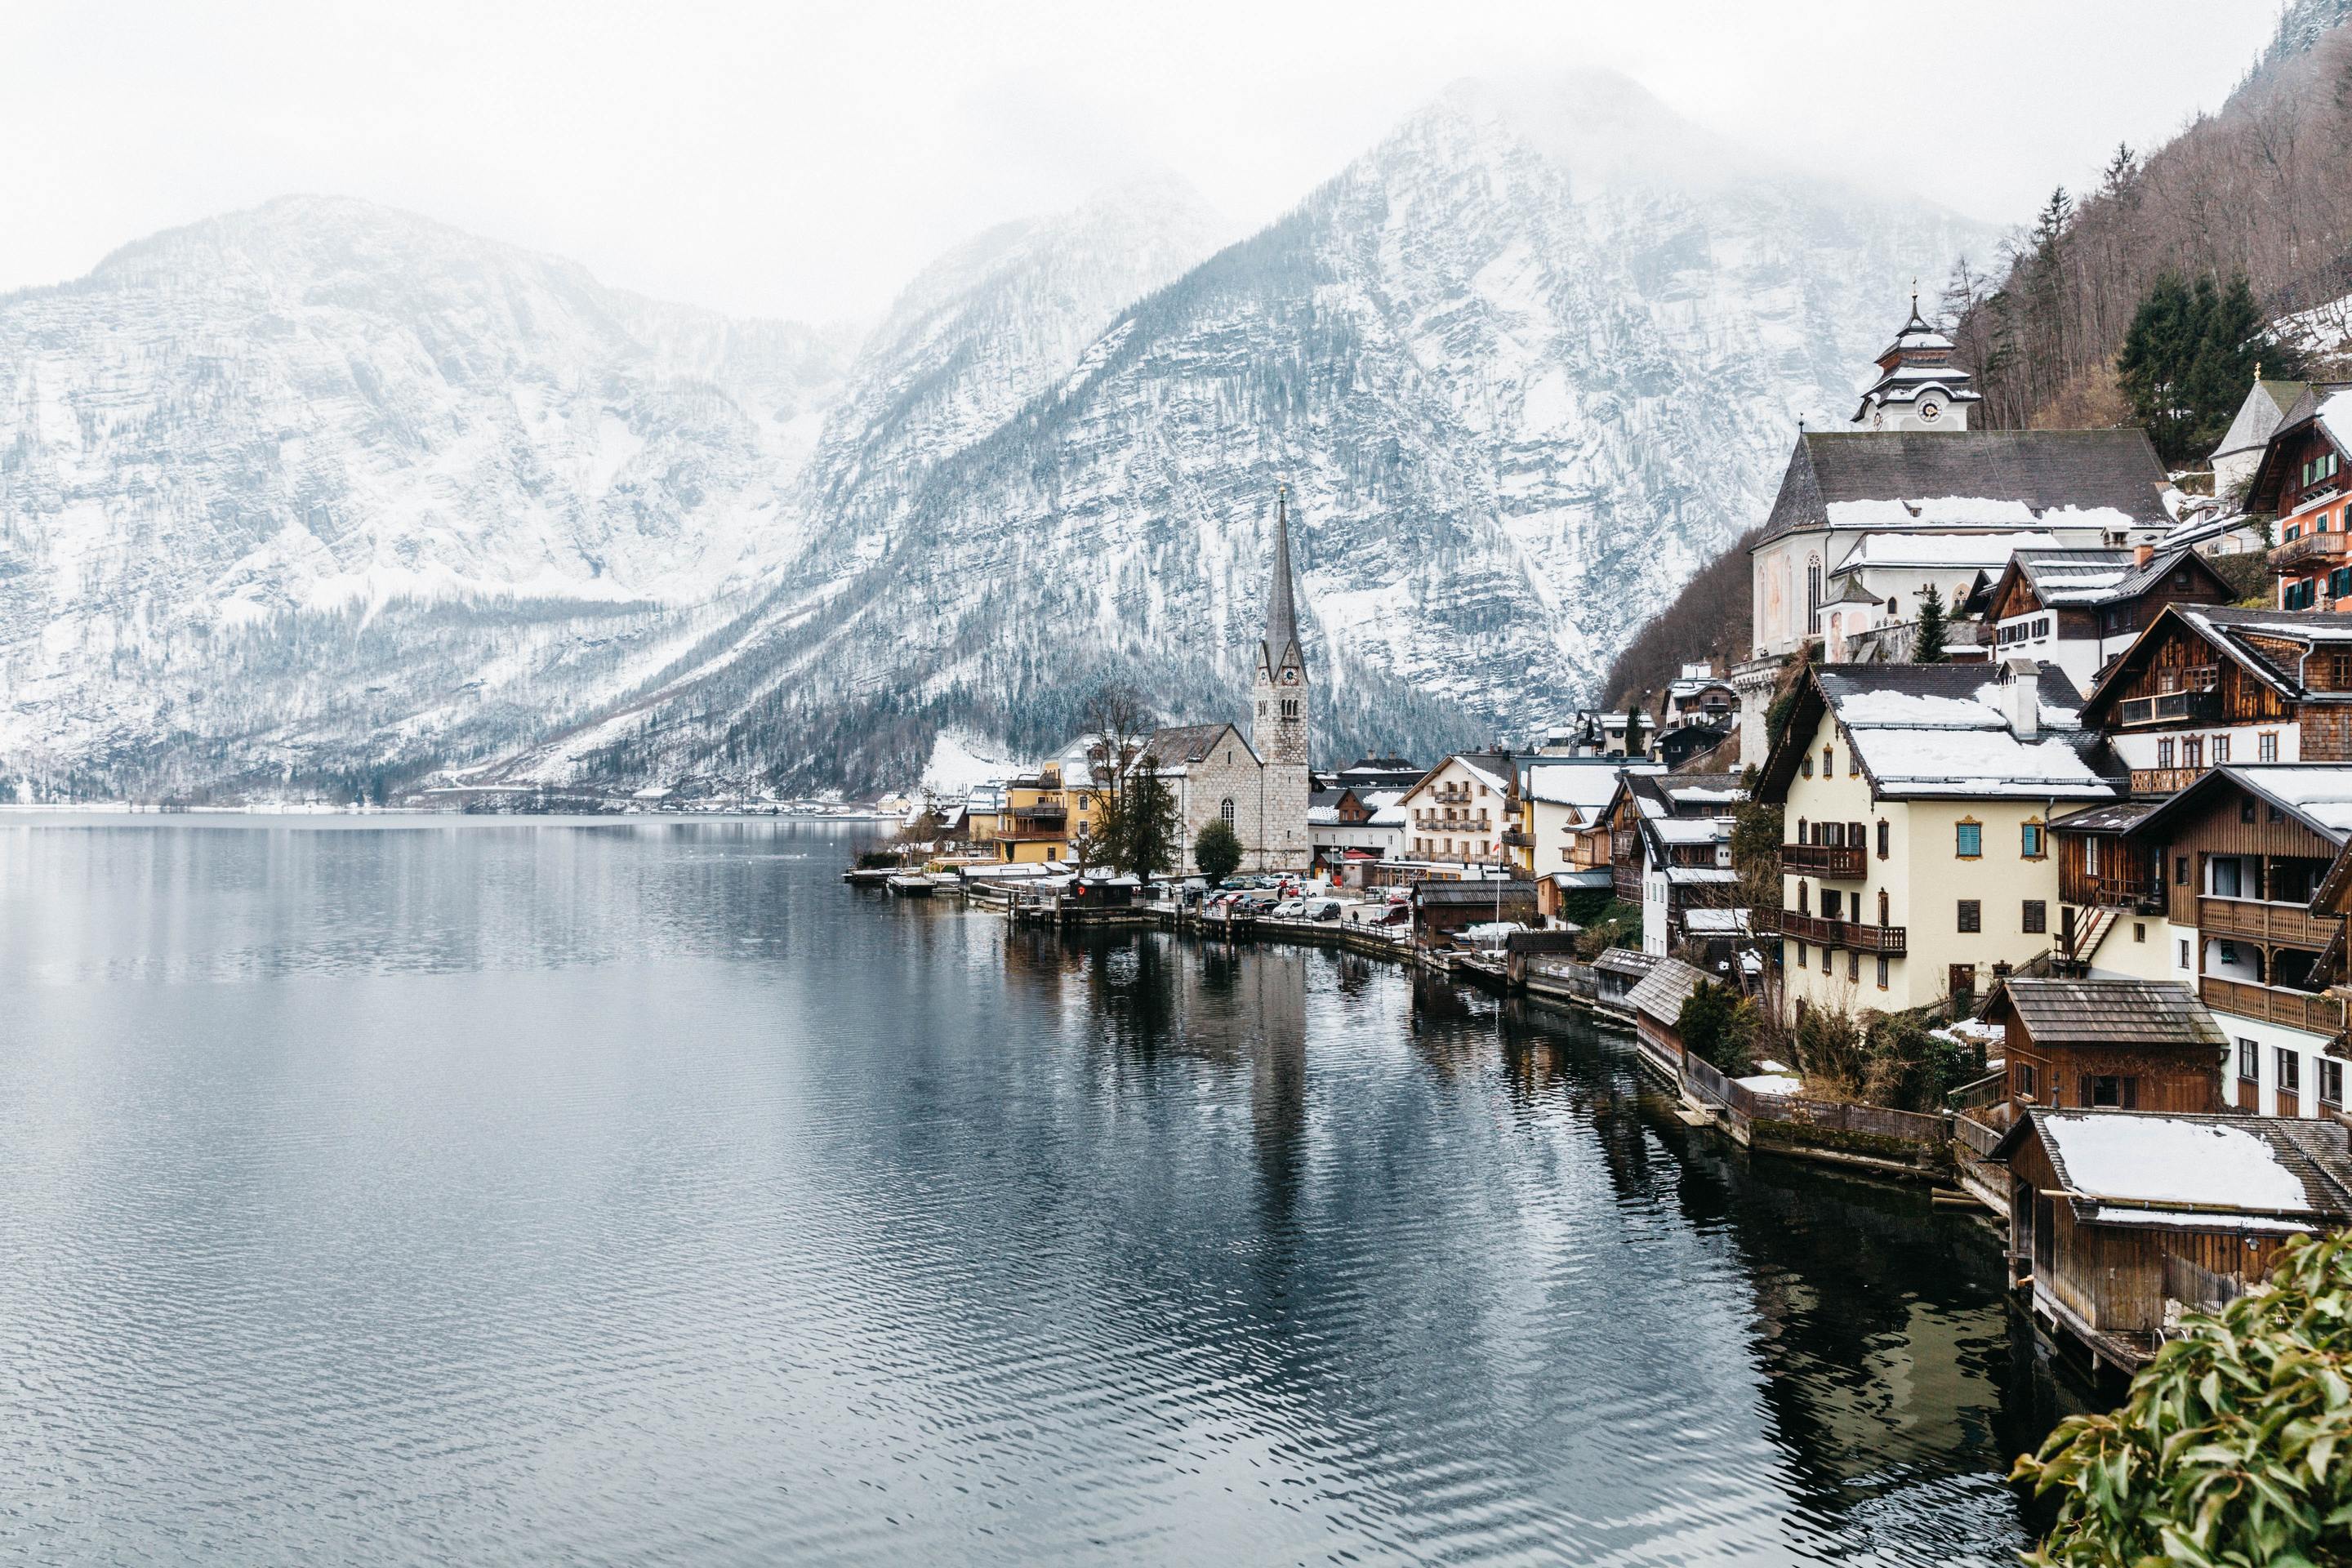 Austria : Lakes and Mountains